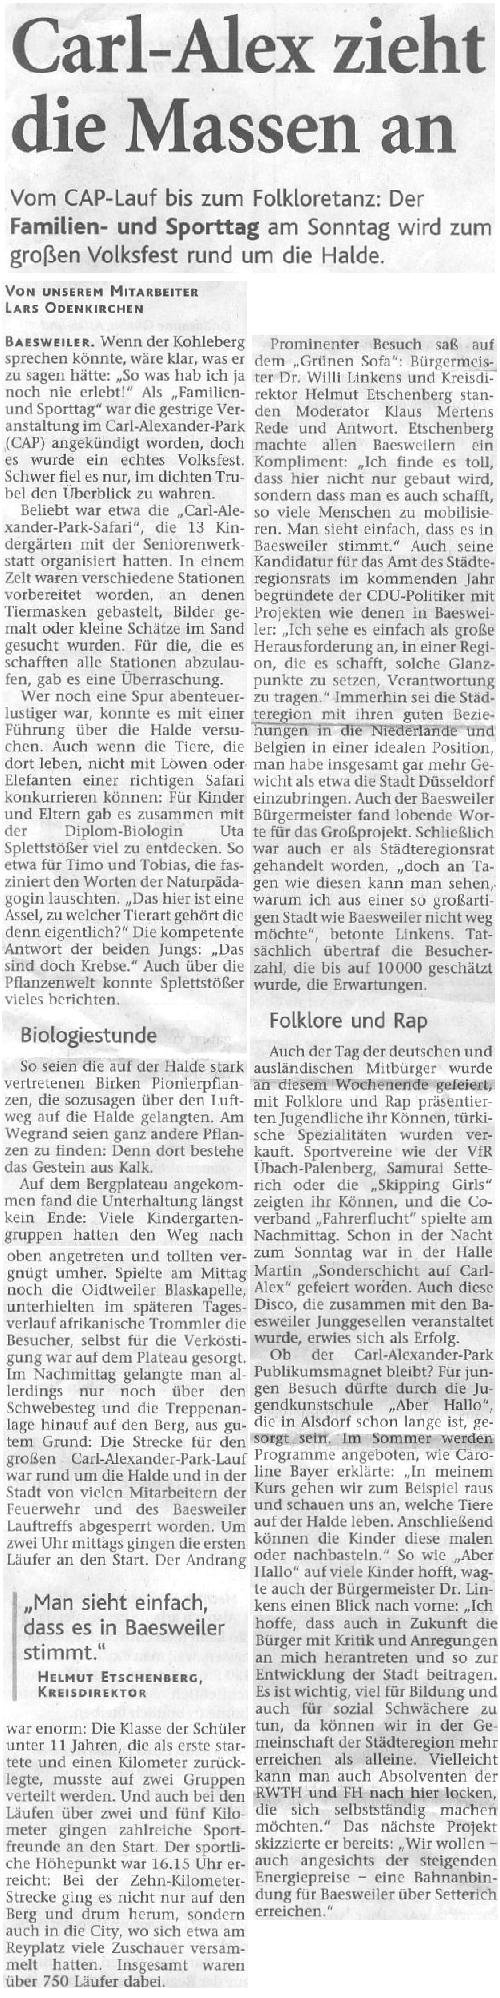 Aachener Zeitung, 26. Mai 2008